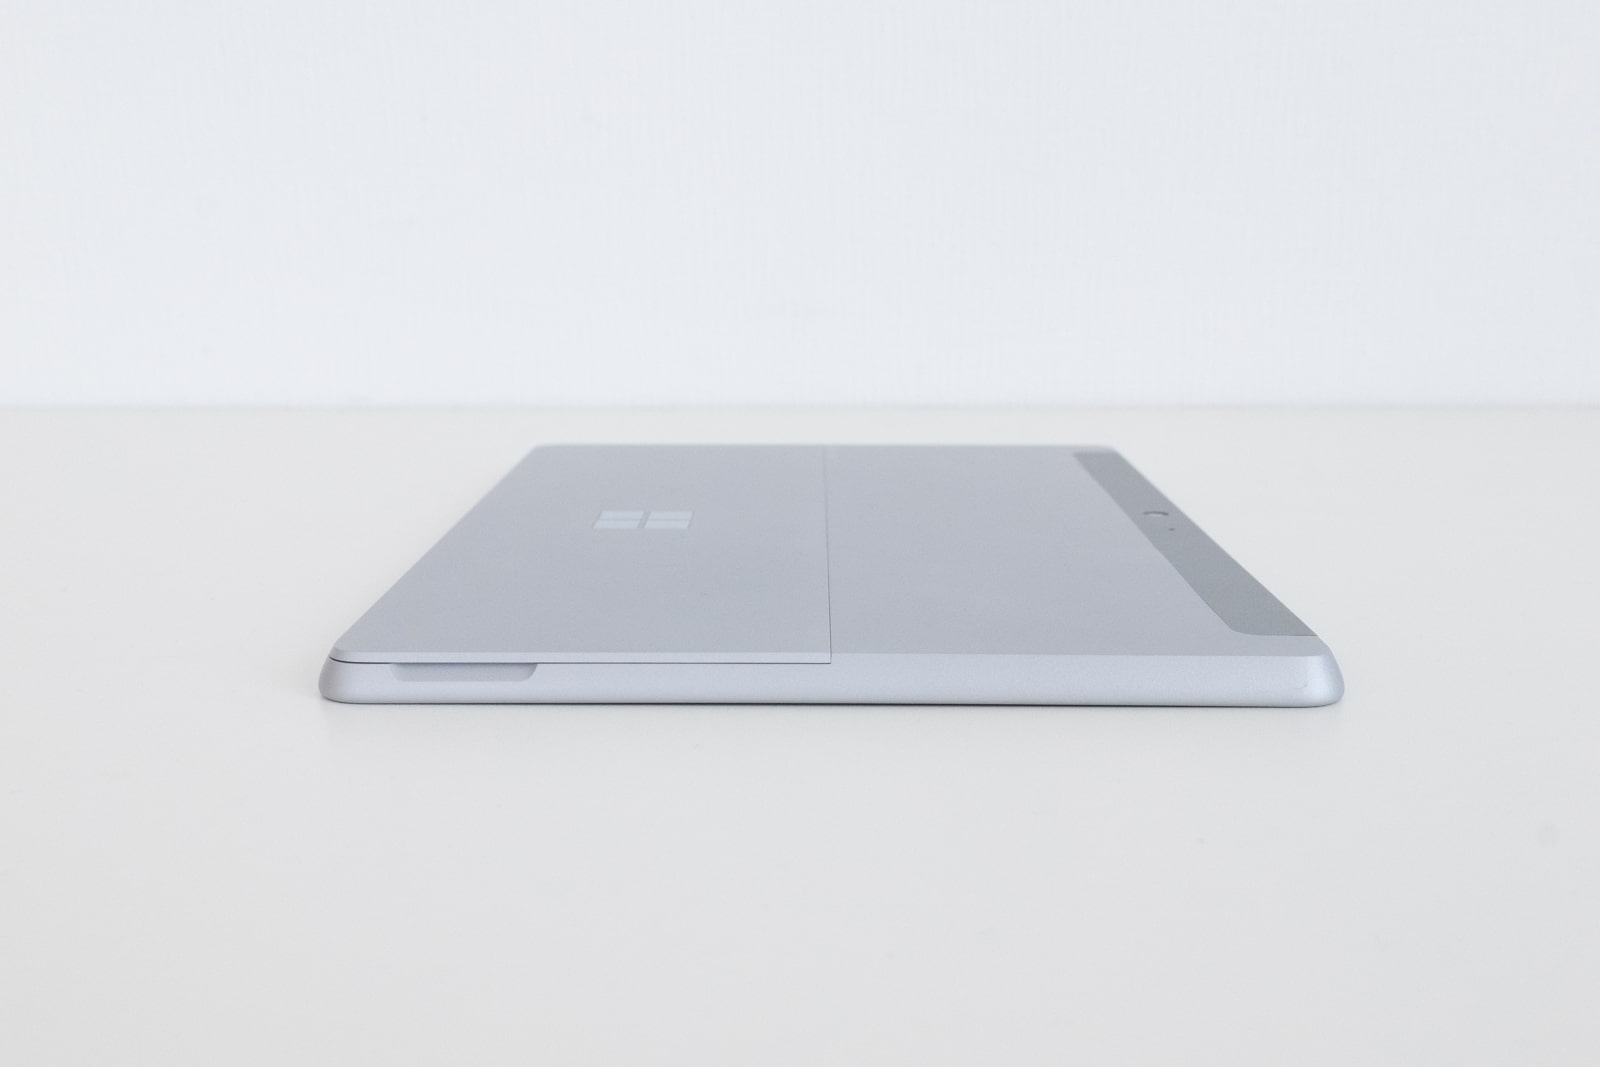 【実機レビュー】Surface Go2のスペック、メリット・デメリット評価と口コミ